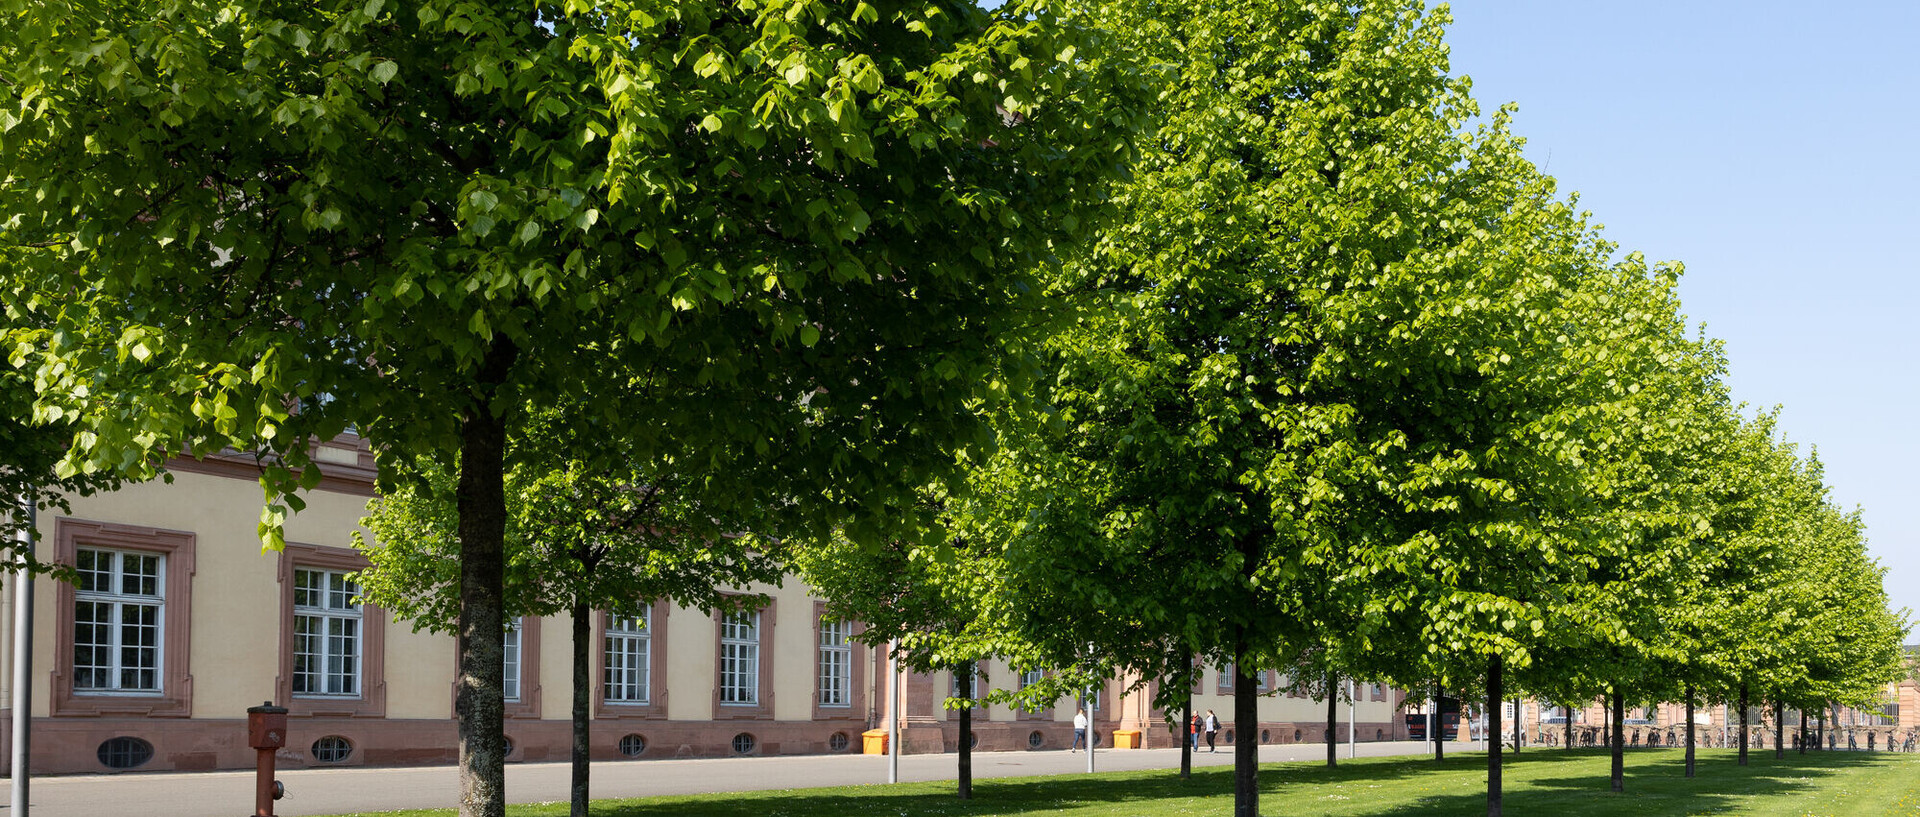 Baumreihe und Grünfläche vor dem Universitätsgebäude